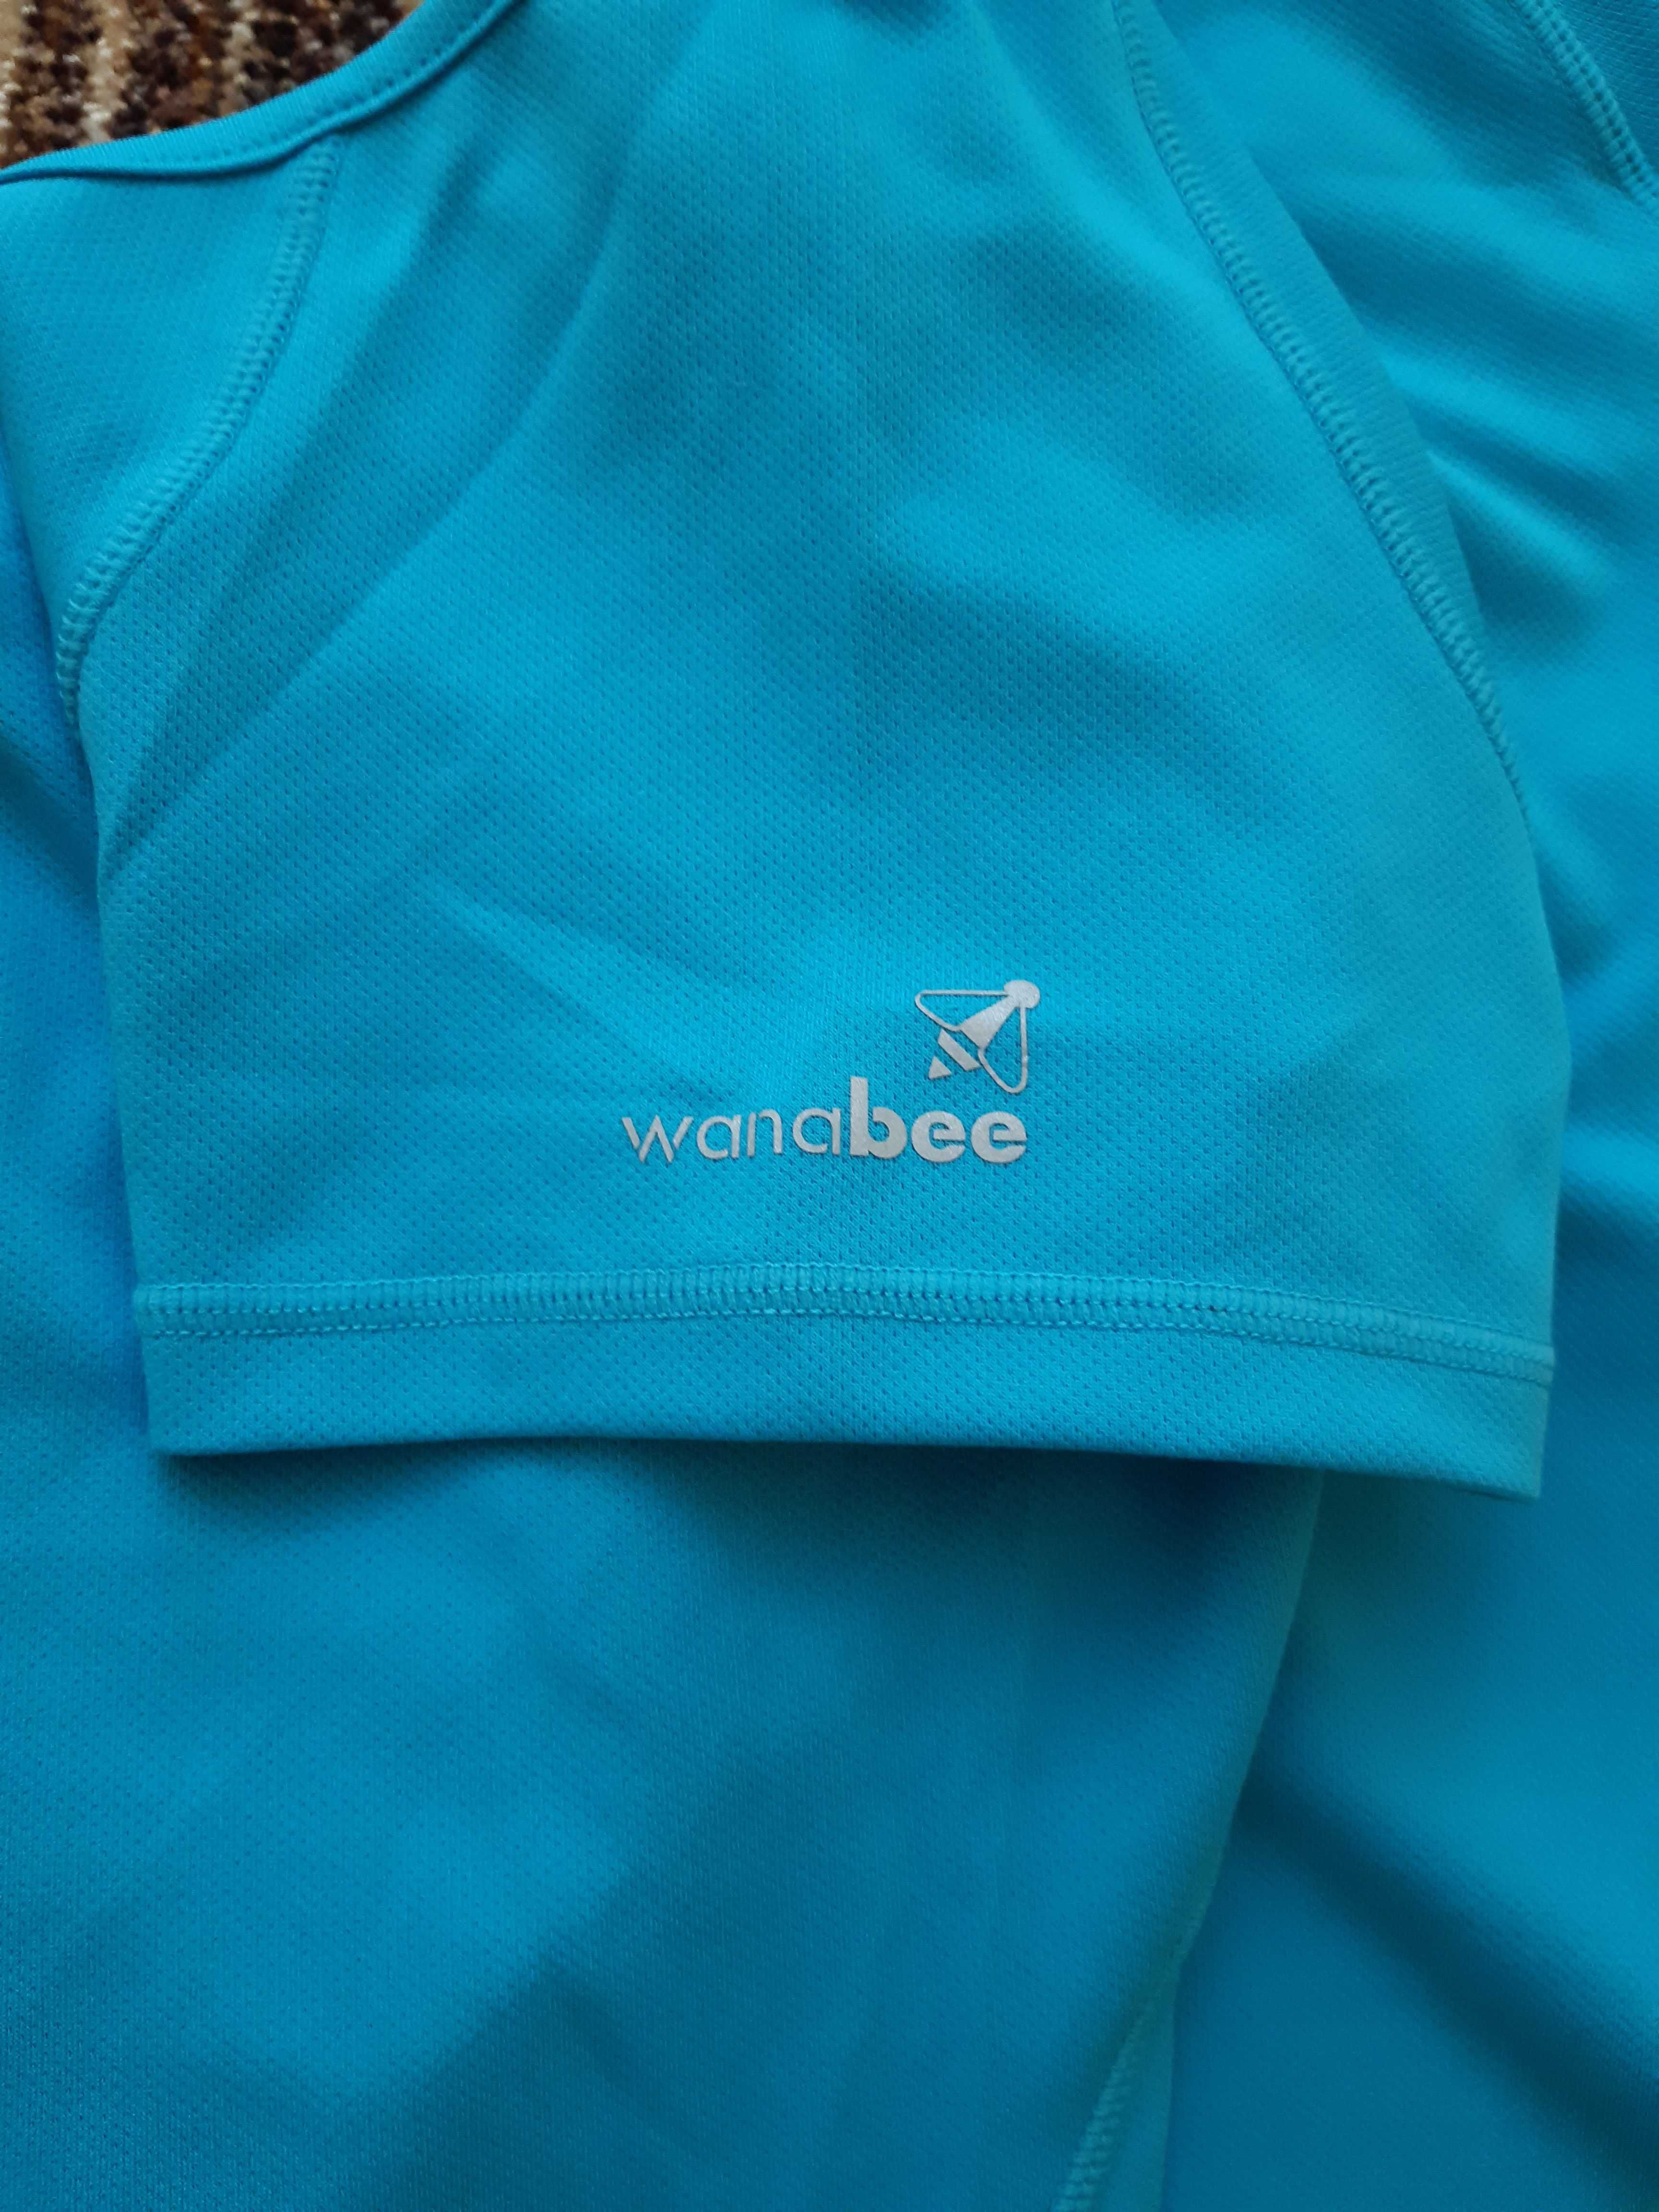 Koszulka podkoszulka damska t-shirt  wanabee XL